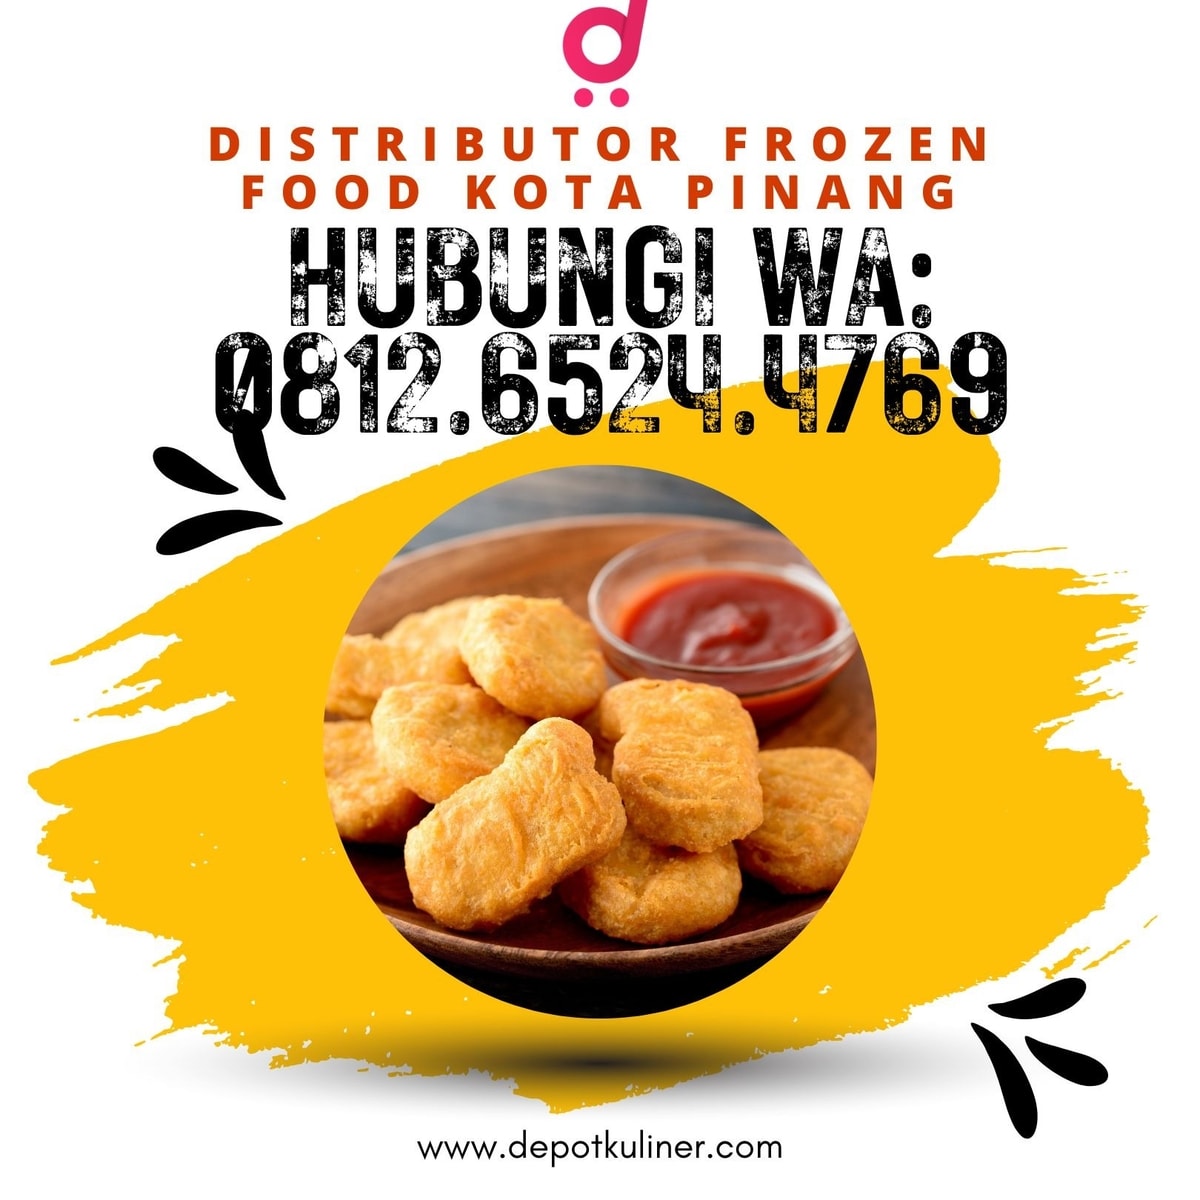 Distributor Frozen Food Kota Pinang TERMURAH, (0812-6524-4769)